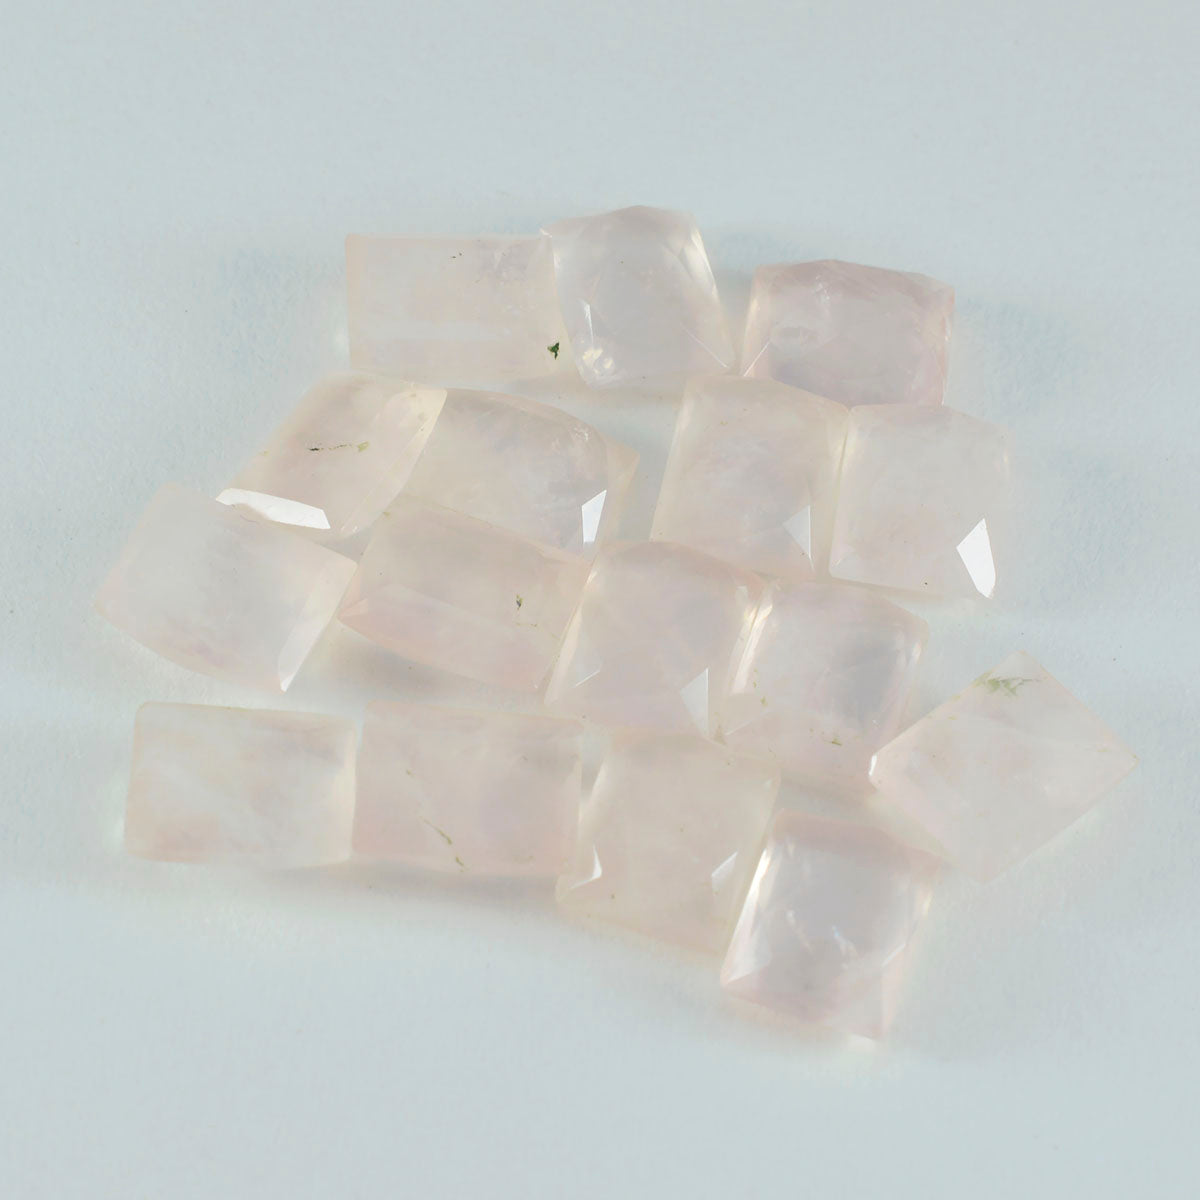 riyogems 1 шт. розовый кварц ограненный 5x7 мм восьмиугольной формы превосходное качество россыпь драгоценных камней